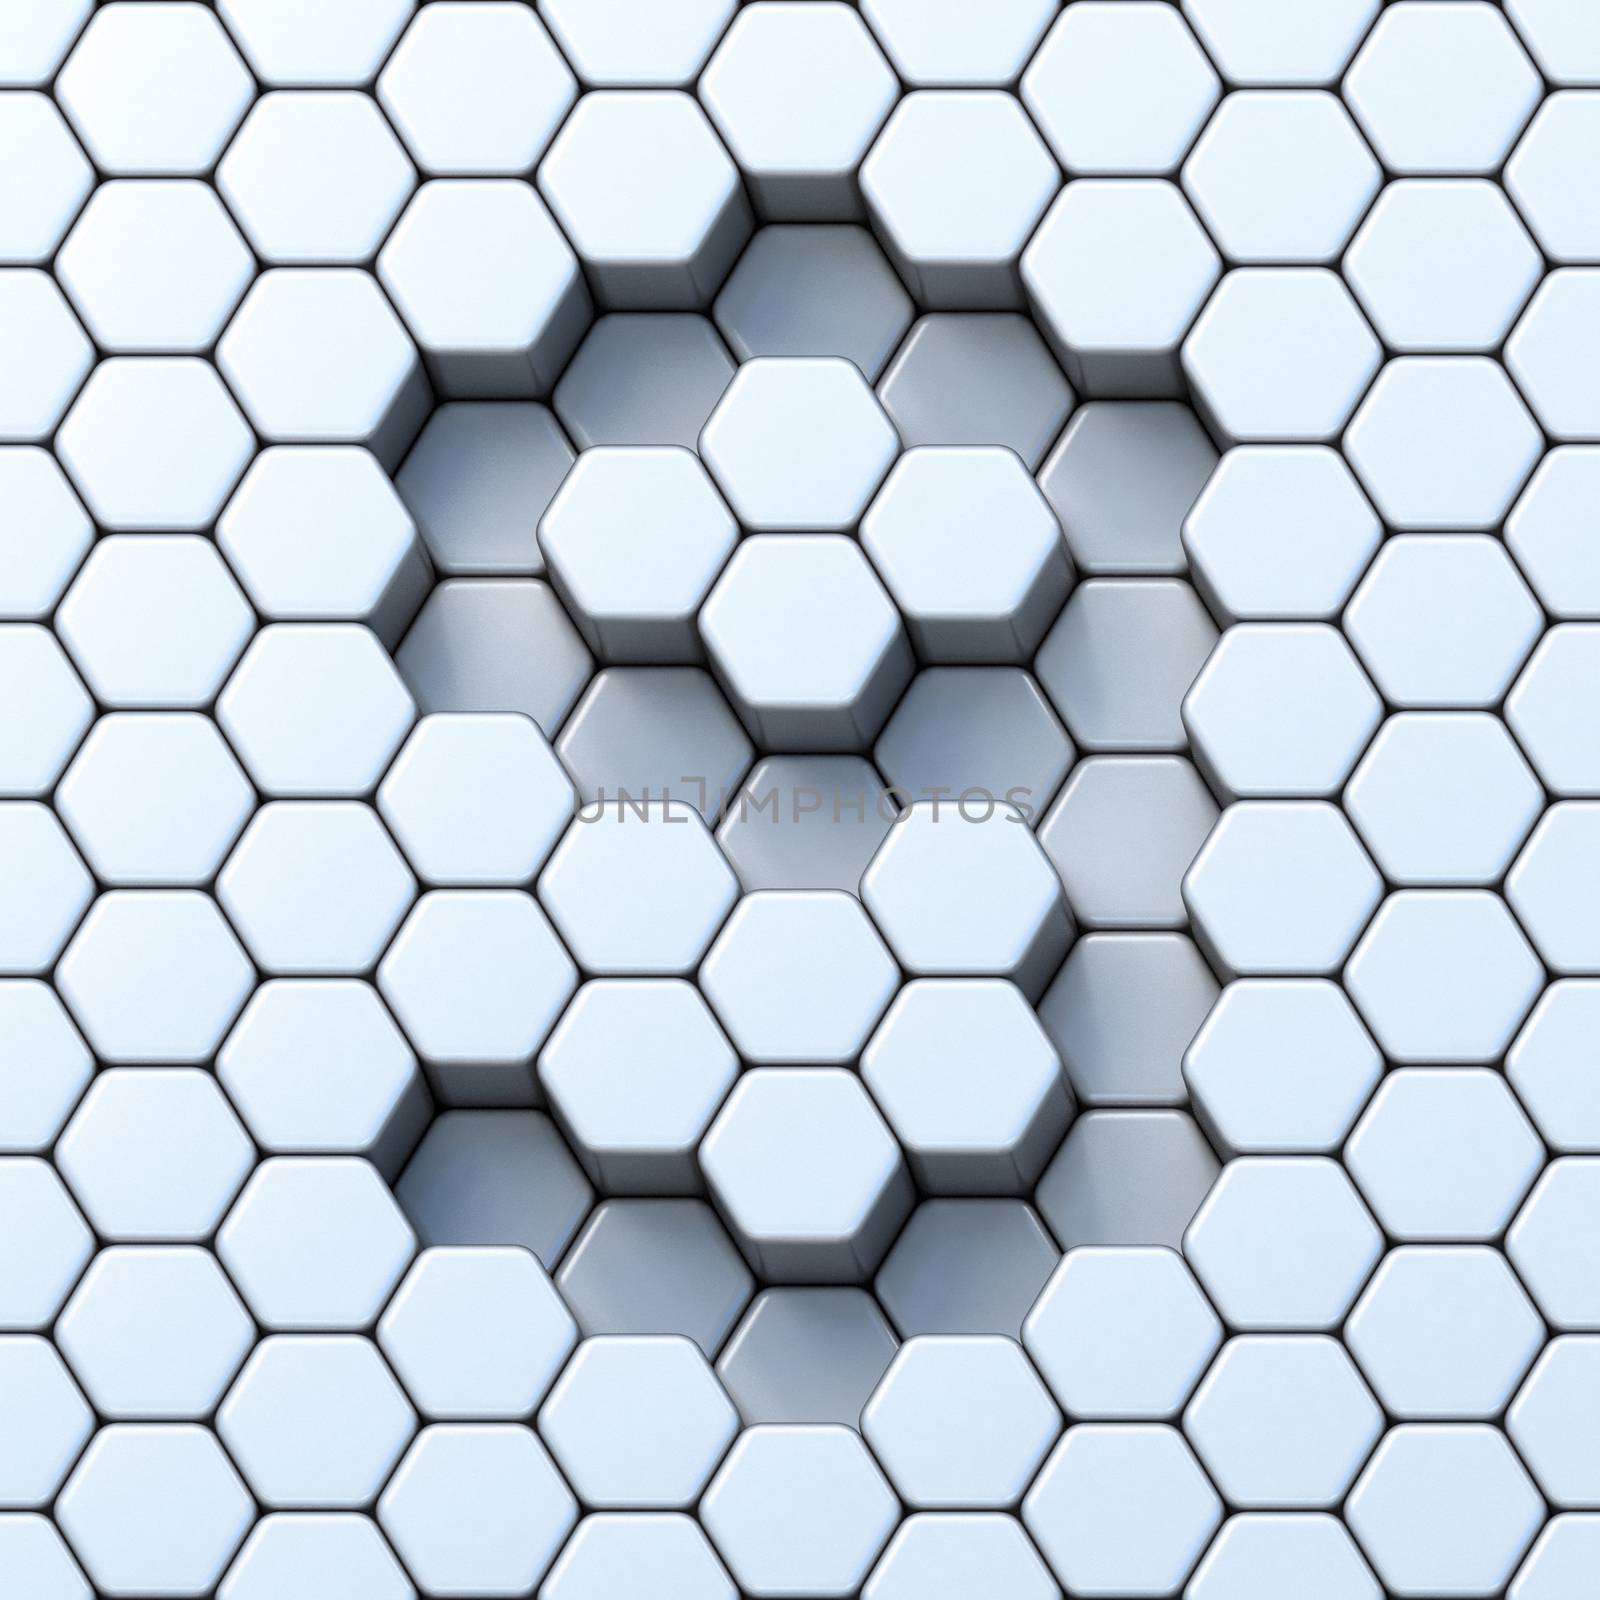 Hexagonal grid number NINE 9 3D render illustration